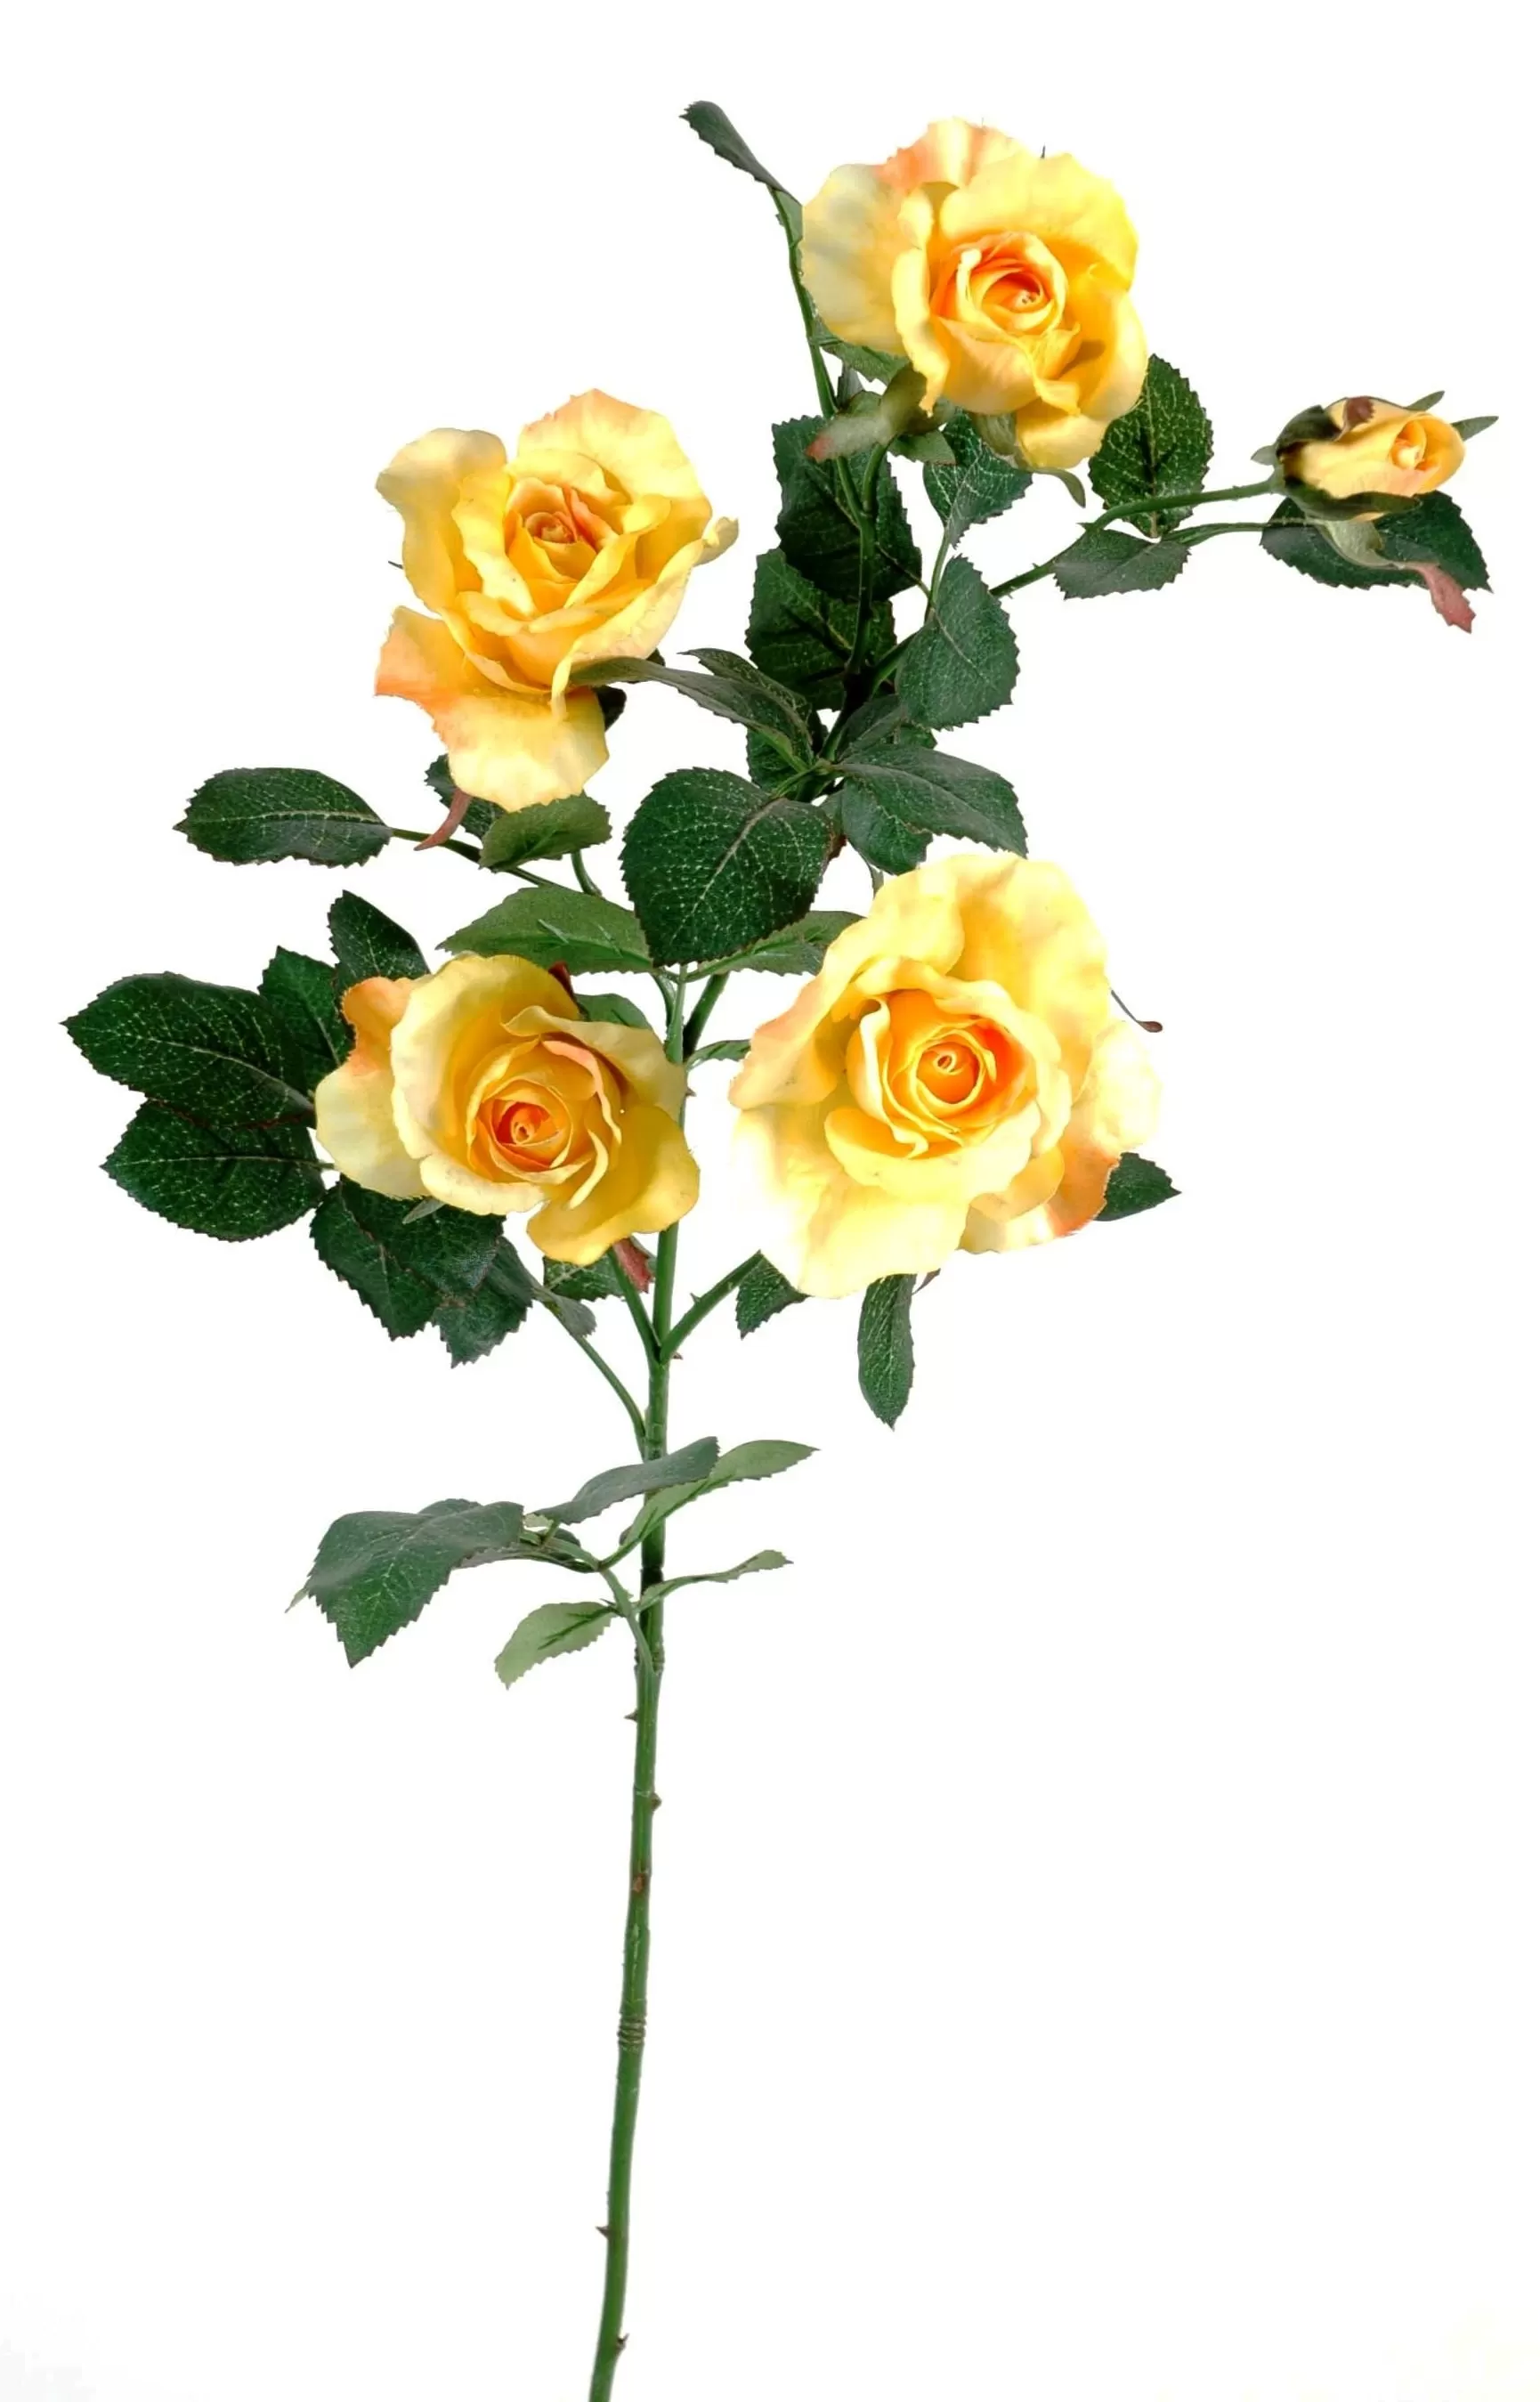 WELCO 2021 Nouveau Fleur Artificielle Rose Color/ée,Romantique Rose /éternelle Symbolise lamour /éternel,Cadeau de Saint-Valentin ou Anniversaire de Mariage Cadeaux Uniques pour Filles,Decoration Maison